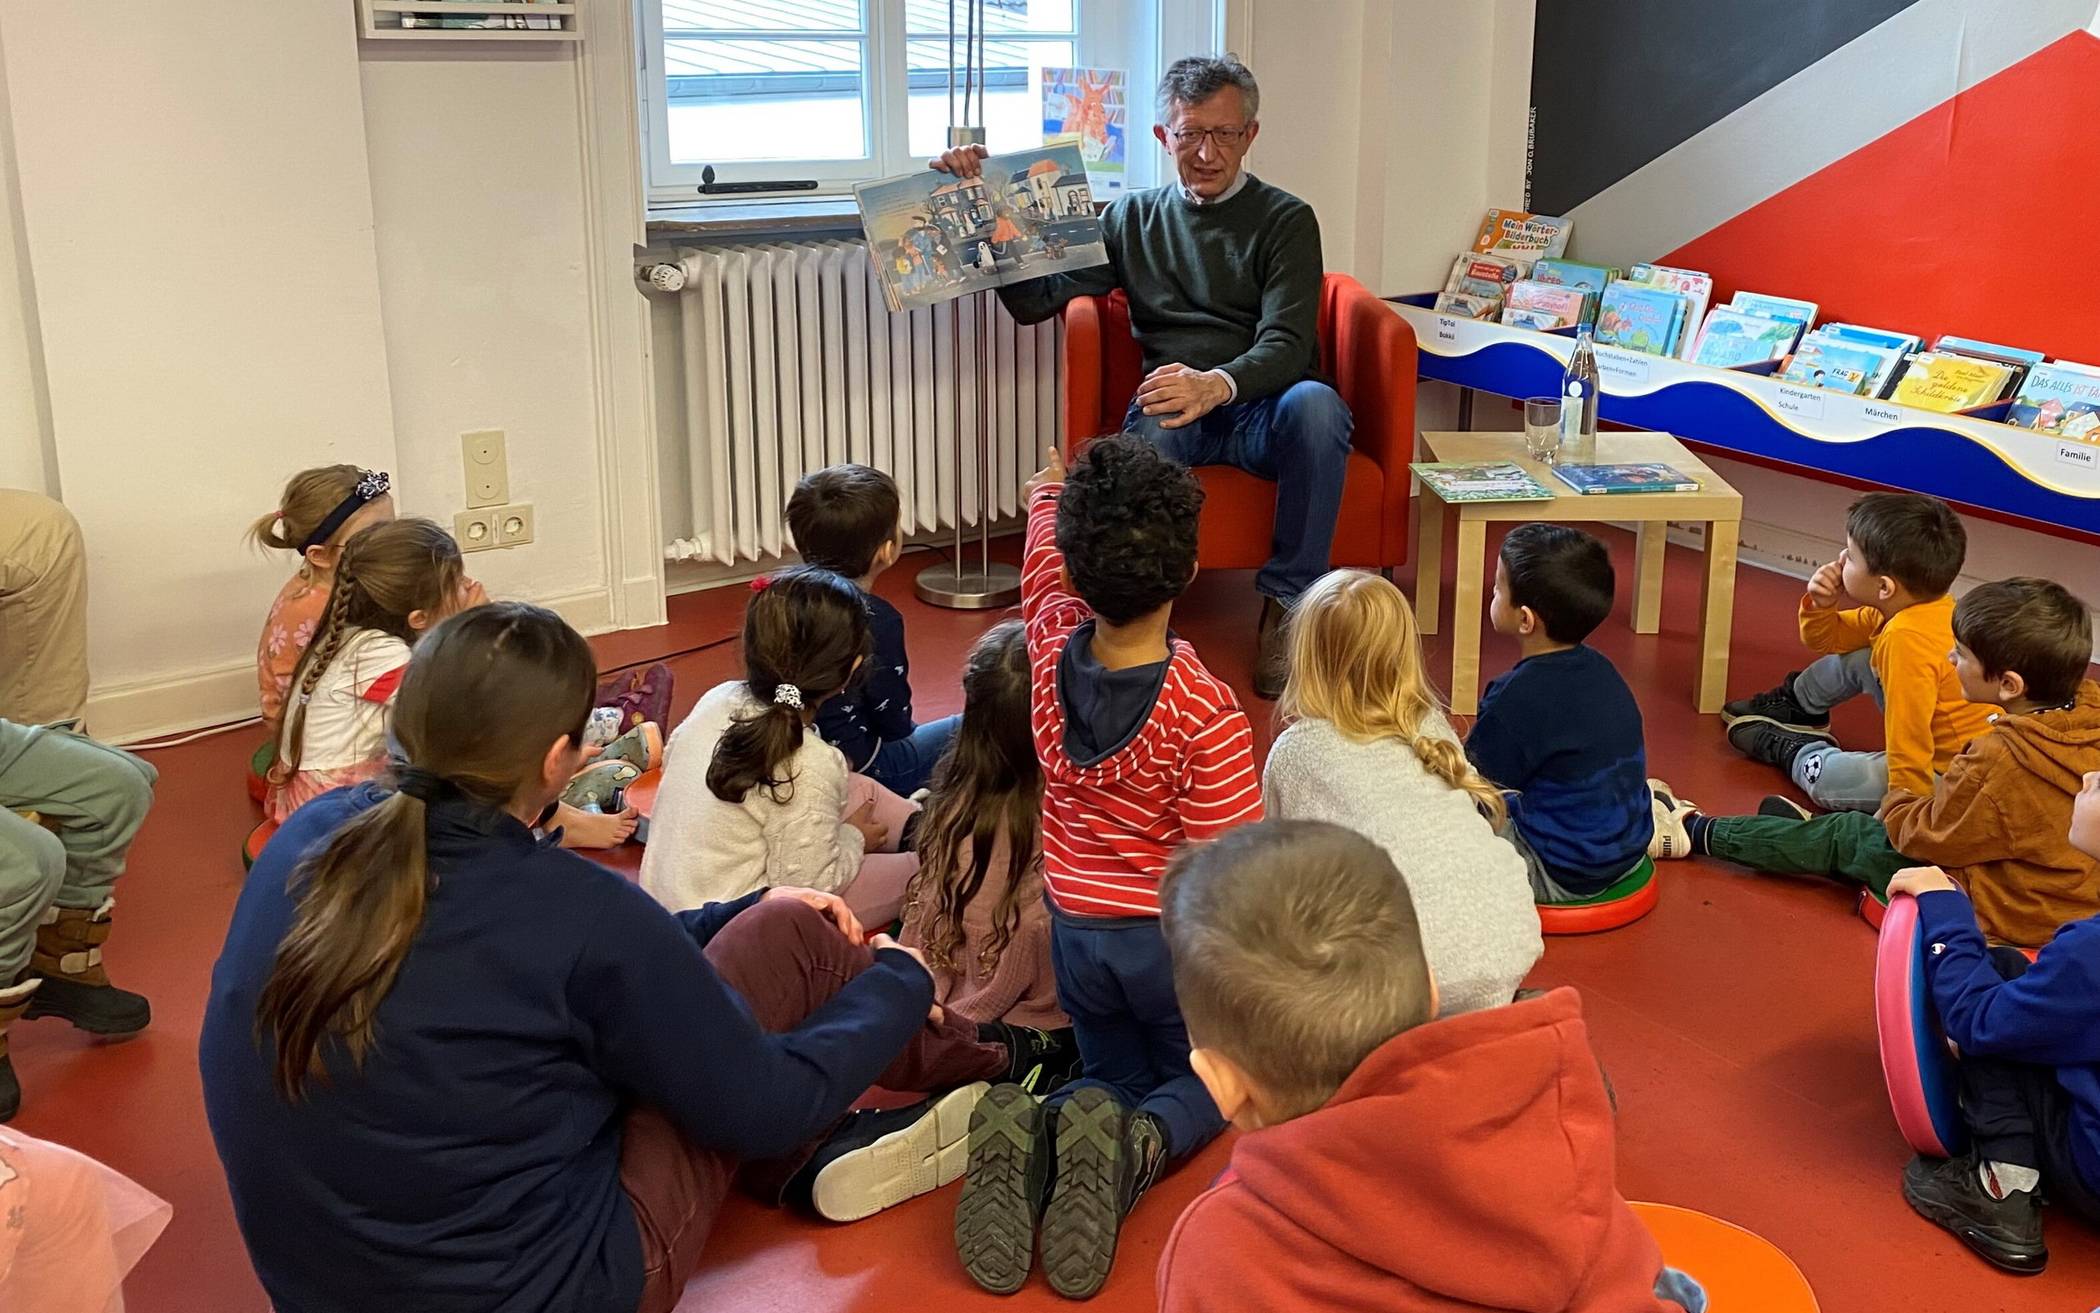 Am bundesweiten Vorlesetag im November war Kulturdezernent Matthias Nocke in der Zentralbibliothek im Einsatz und hat Grundschulkindern spannende Geschichten vorgelesen.